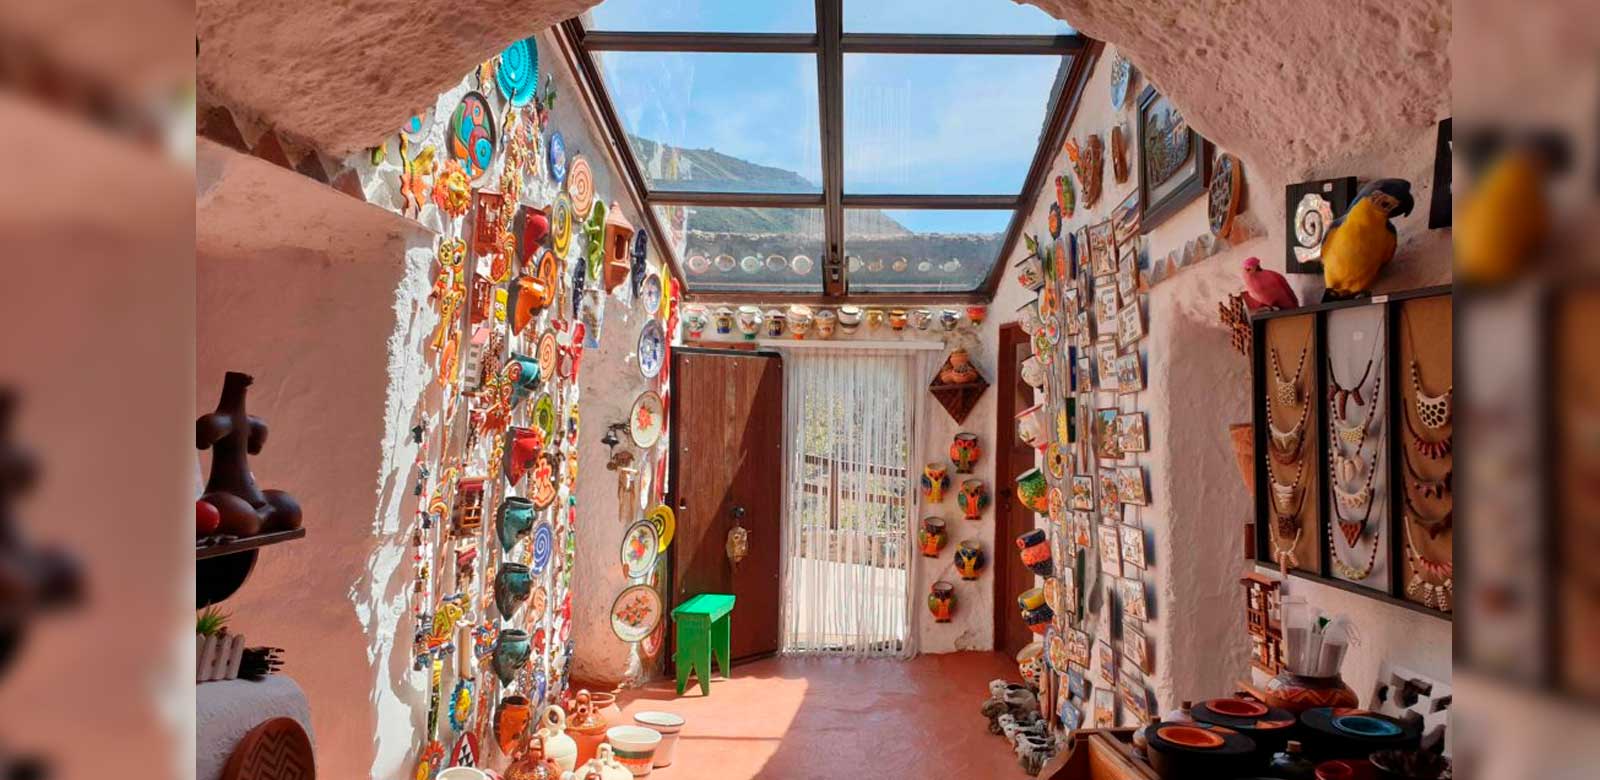 Casa Cueva Canaria, tienda de artesanía y productos canarios Guayadeque